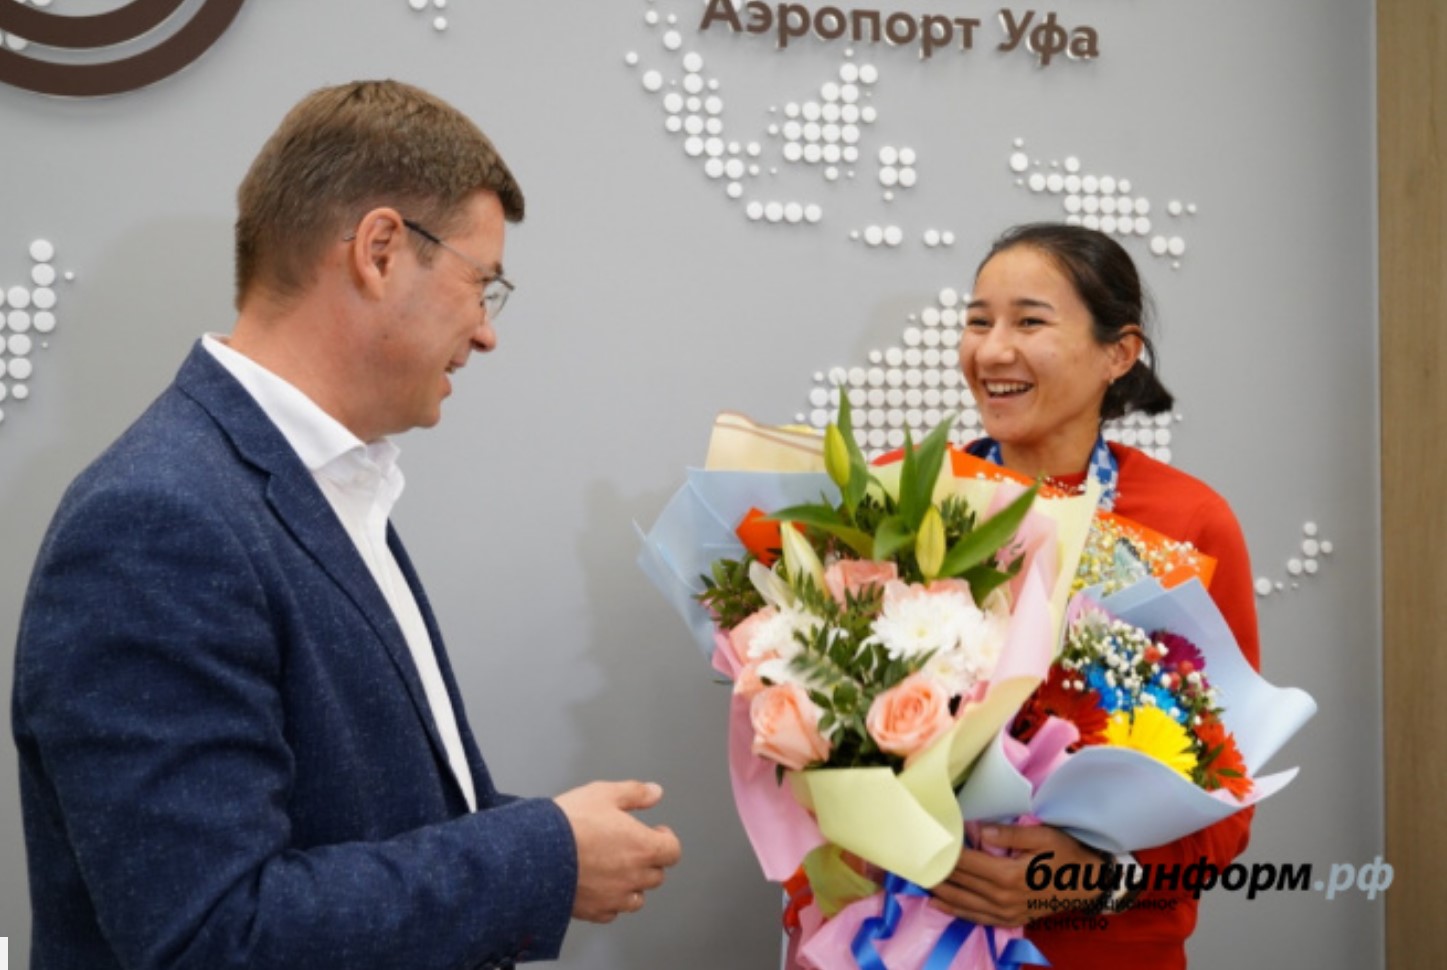 Олимпийская чемпионка по фехтованию на рапире Аделина Загидуллина вернулась в Уфу